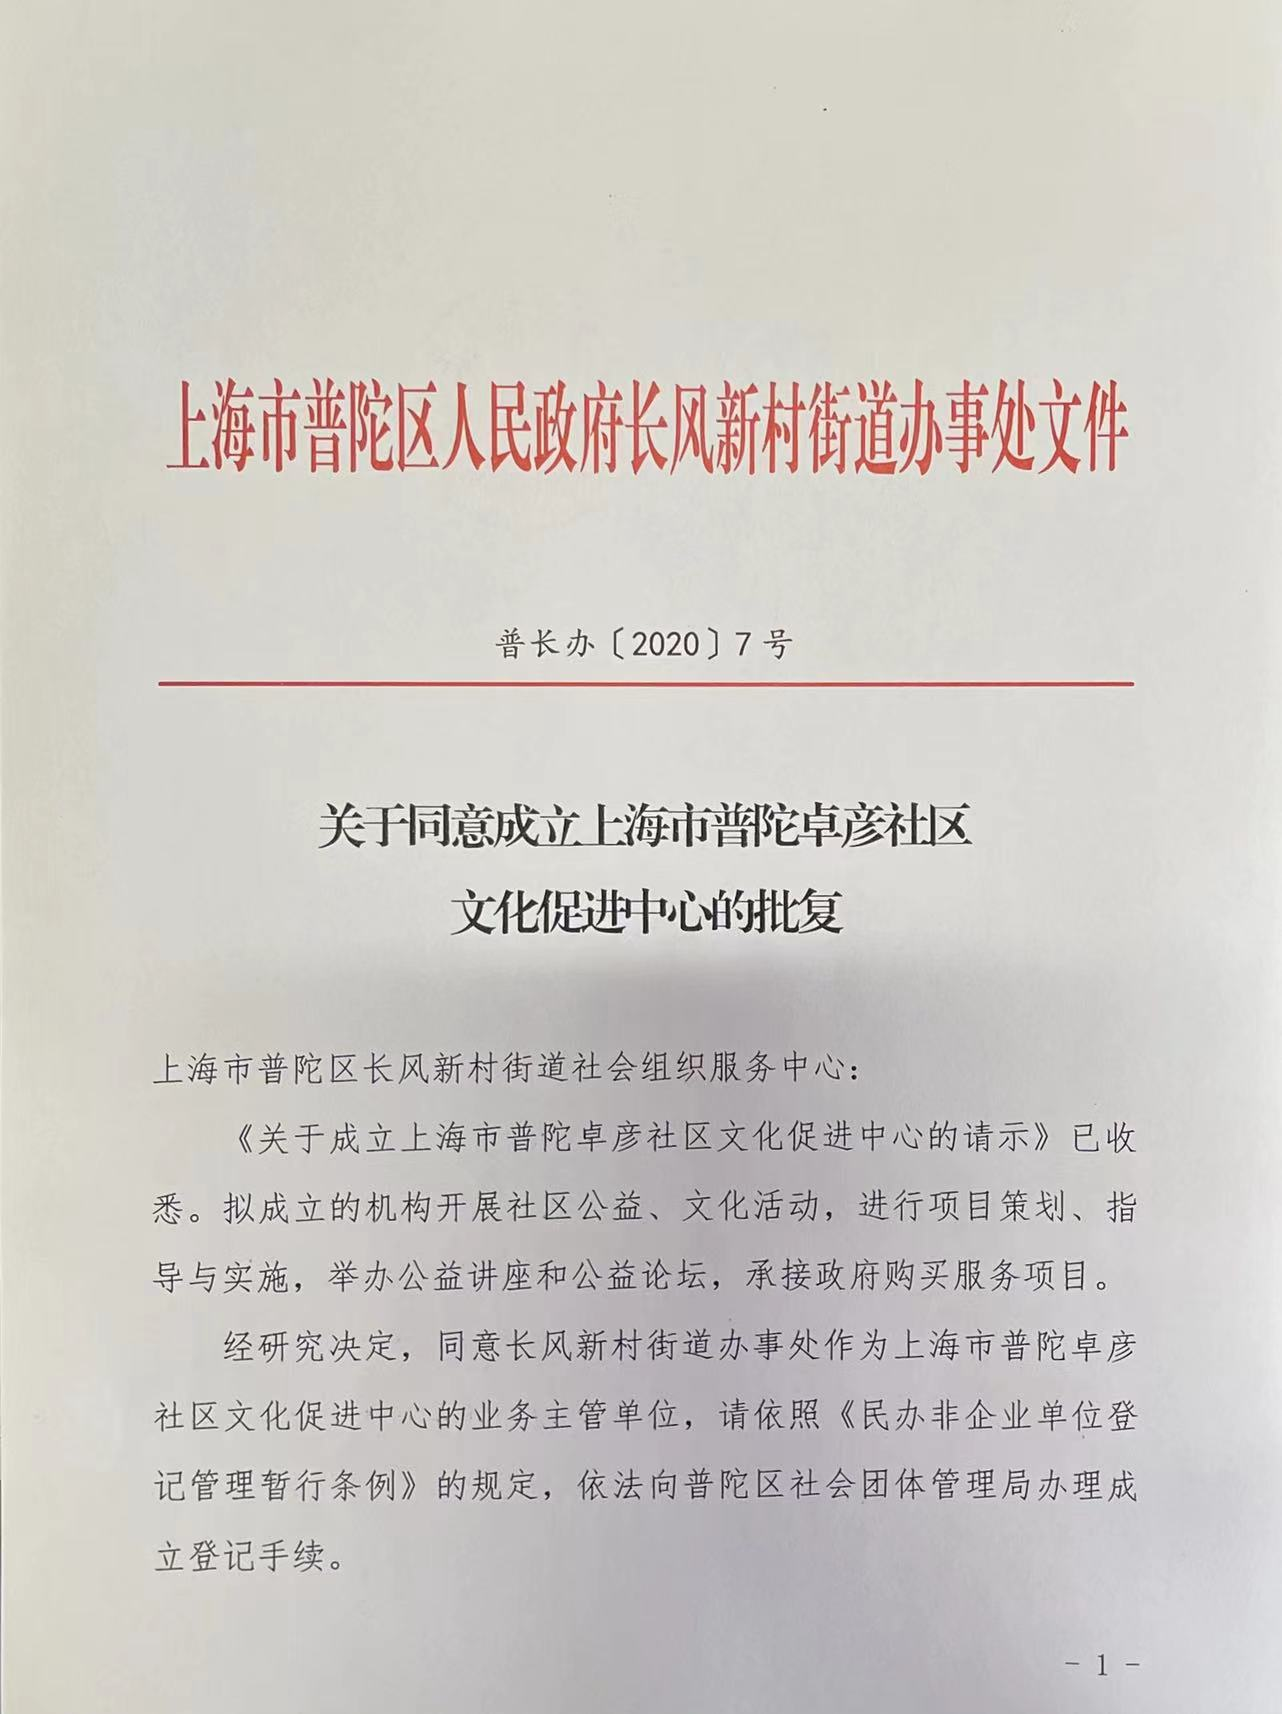 关于同意成立上海市普陀卓彦社区文化促进中心的批复